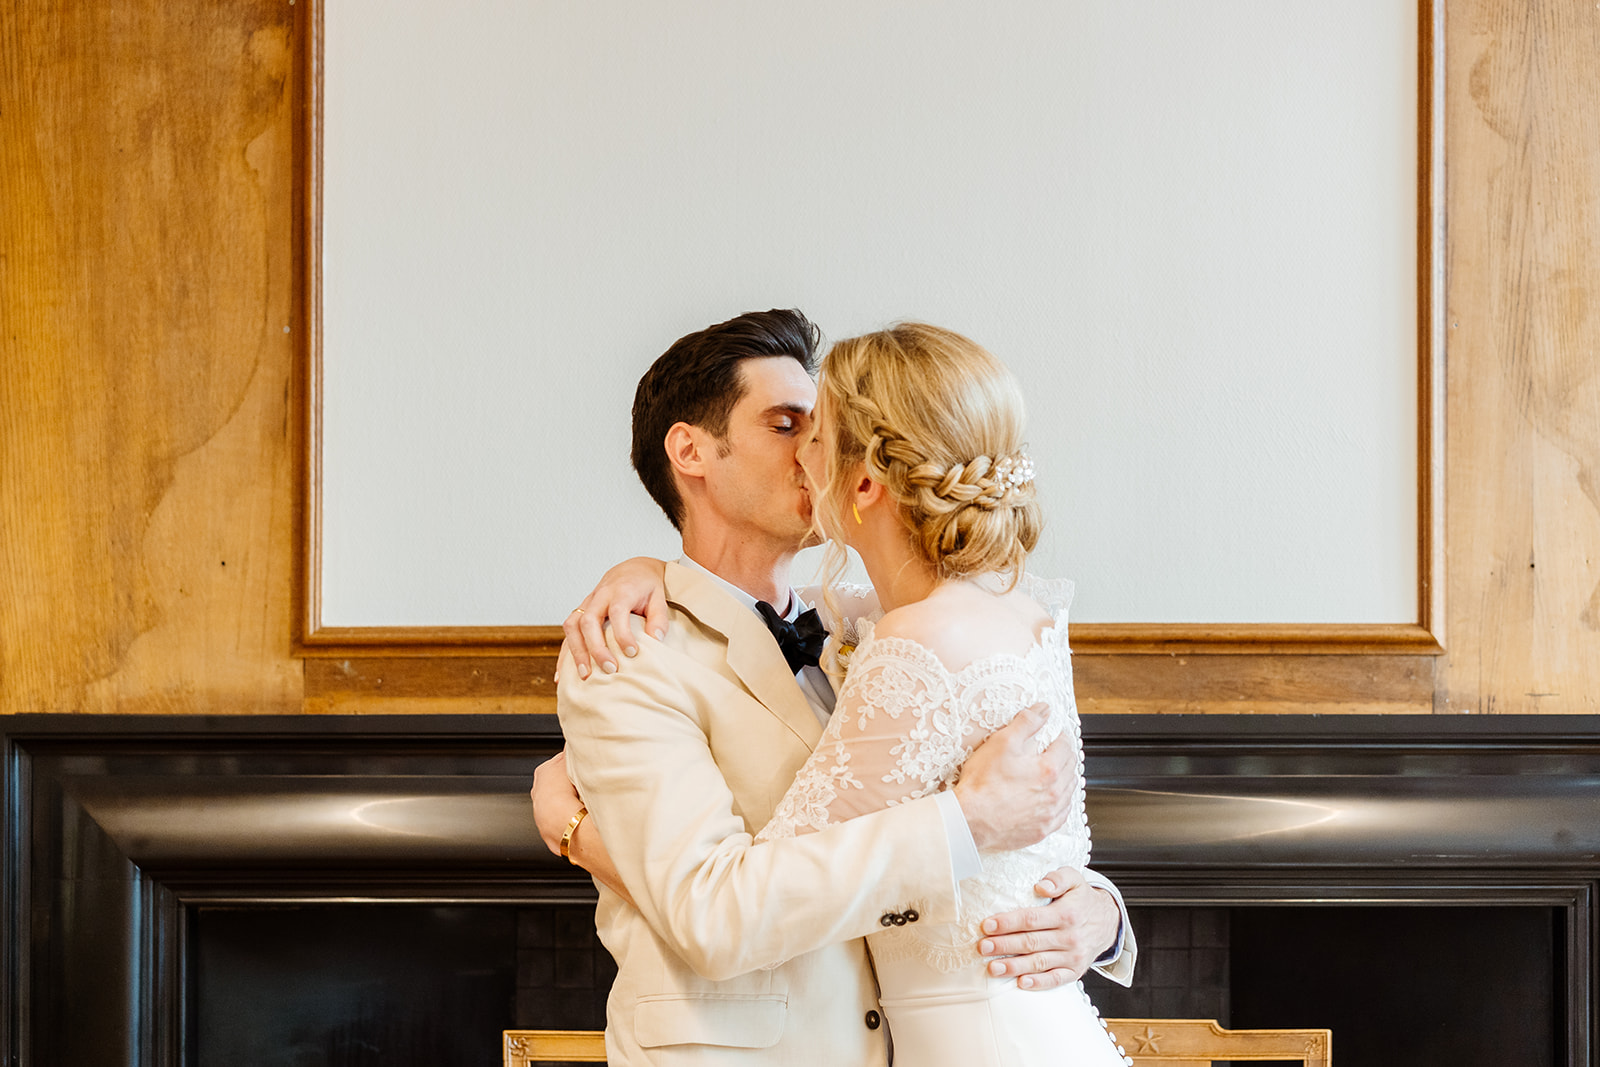 Bruidsfotograaf Maastricht - De eerste kus van het bruidspaar